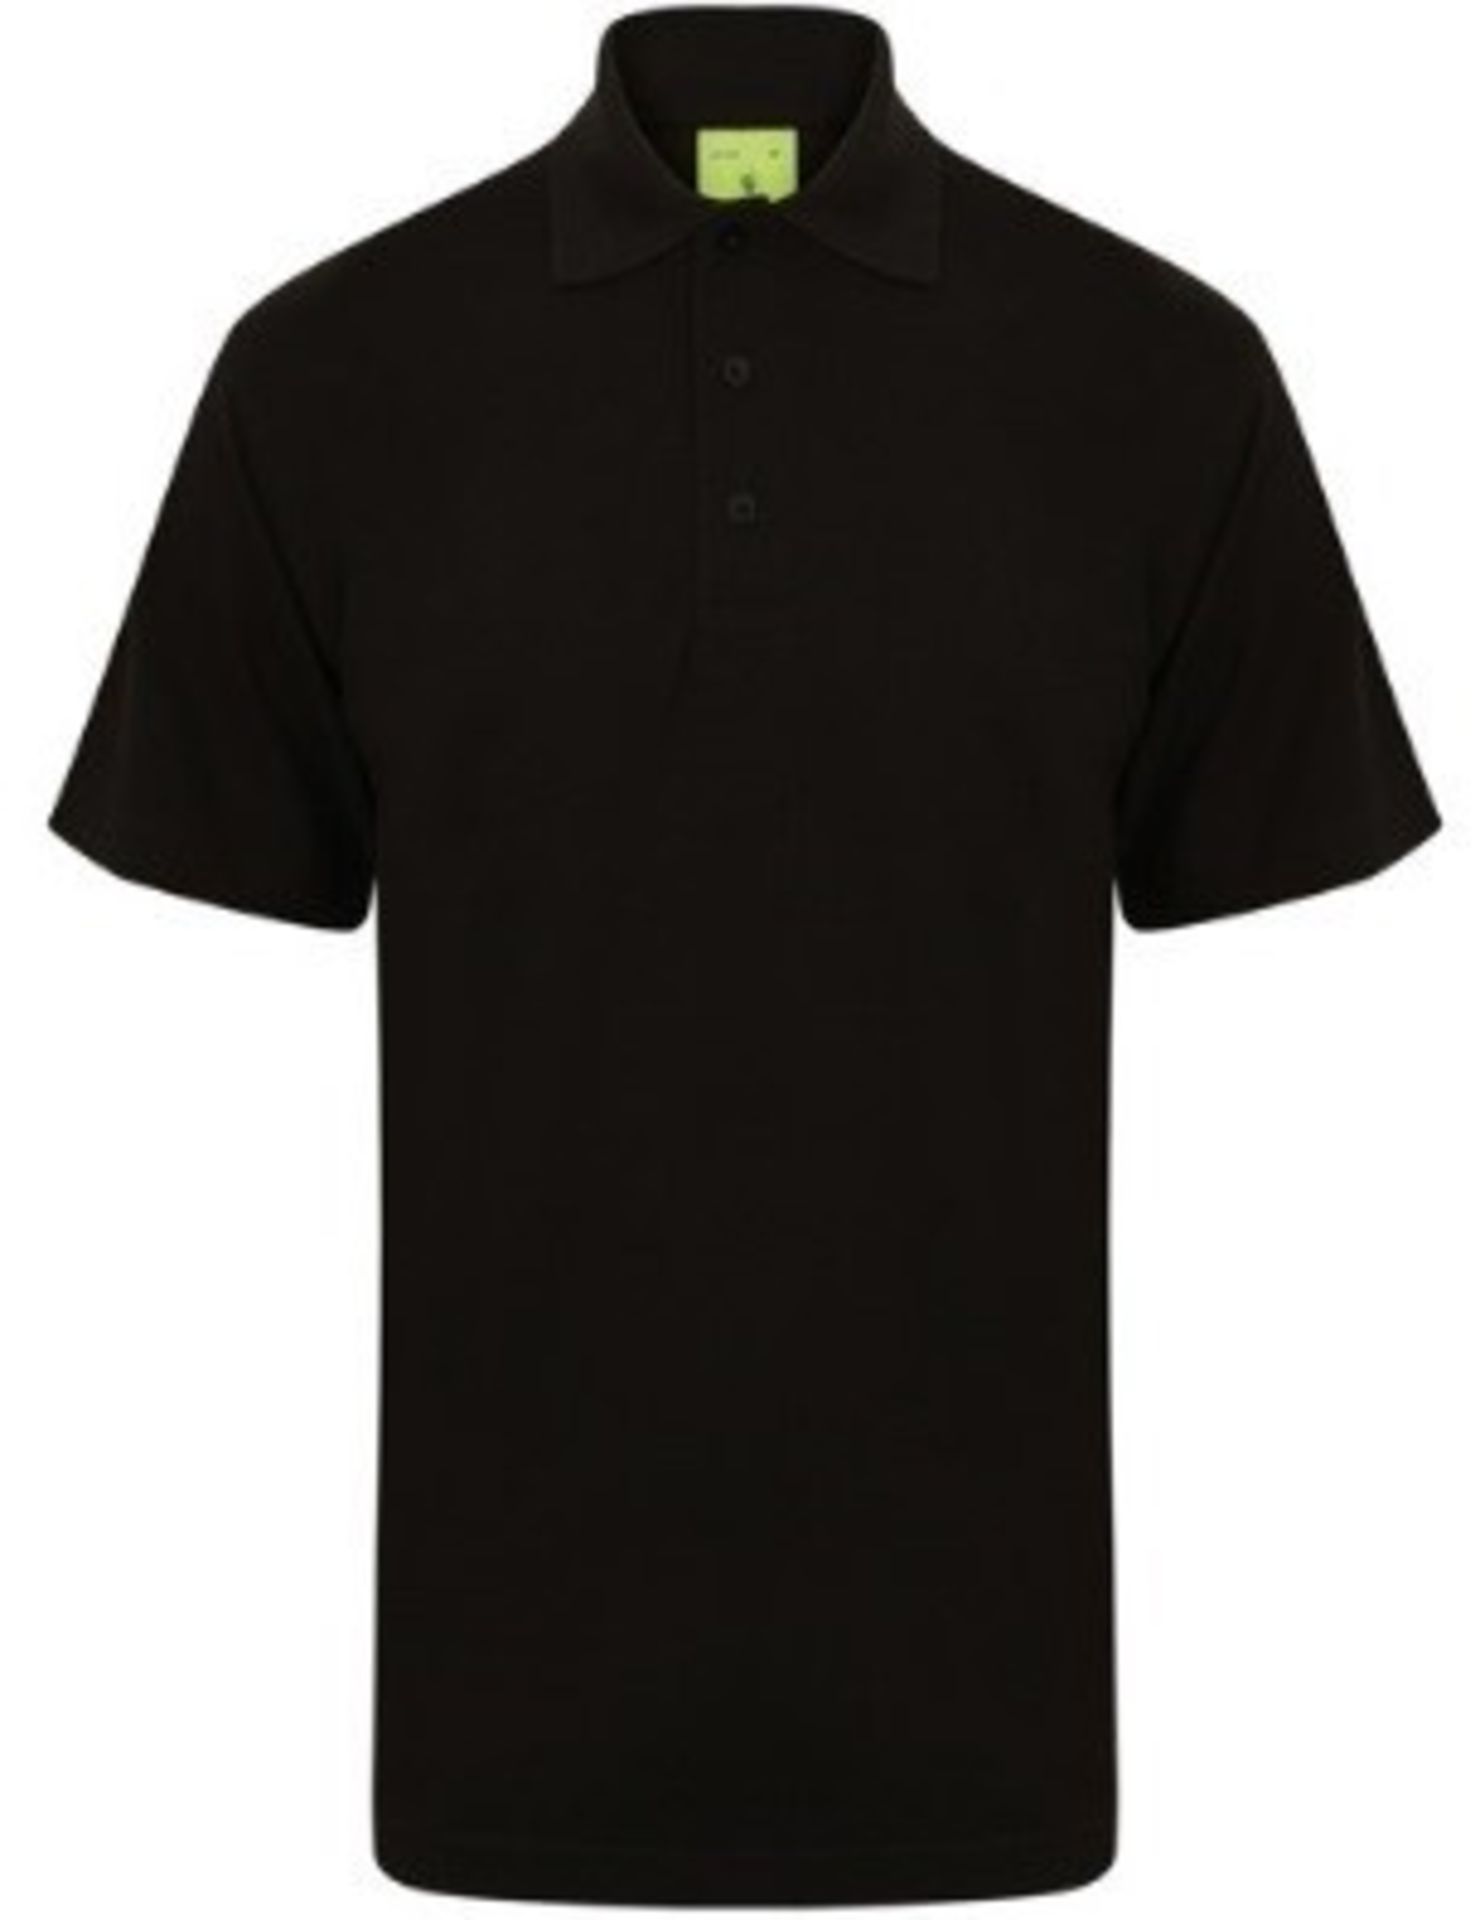 9 x Uneek Active Pique Polo Shirts (Work Wear) Colour: Black - Size: Small - CL185 - Ref: UN/UC105/